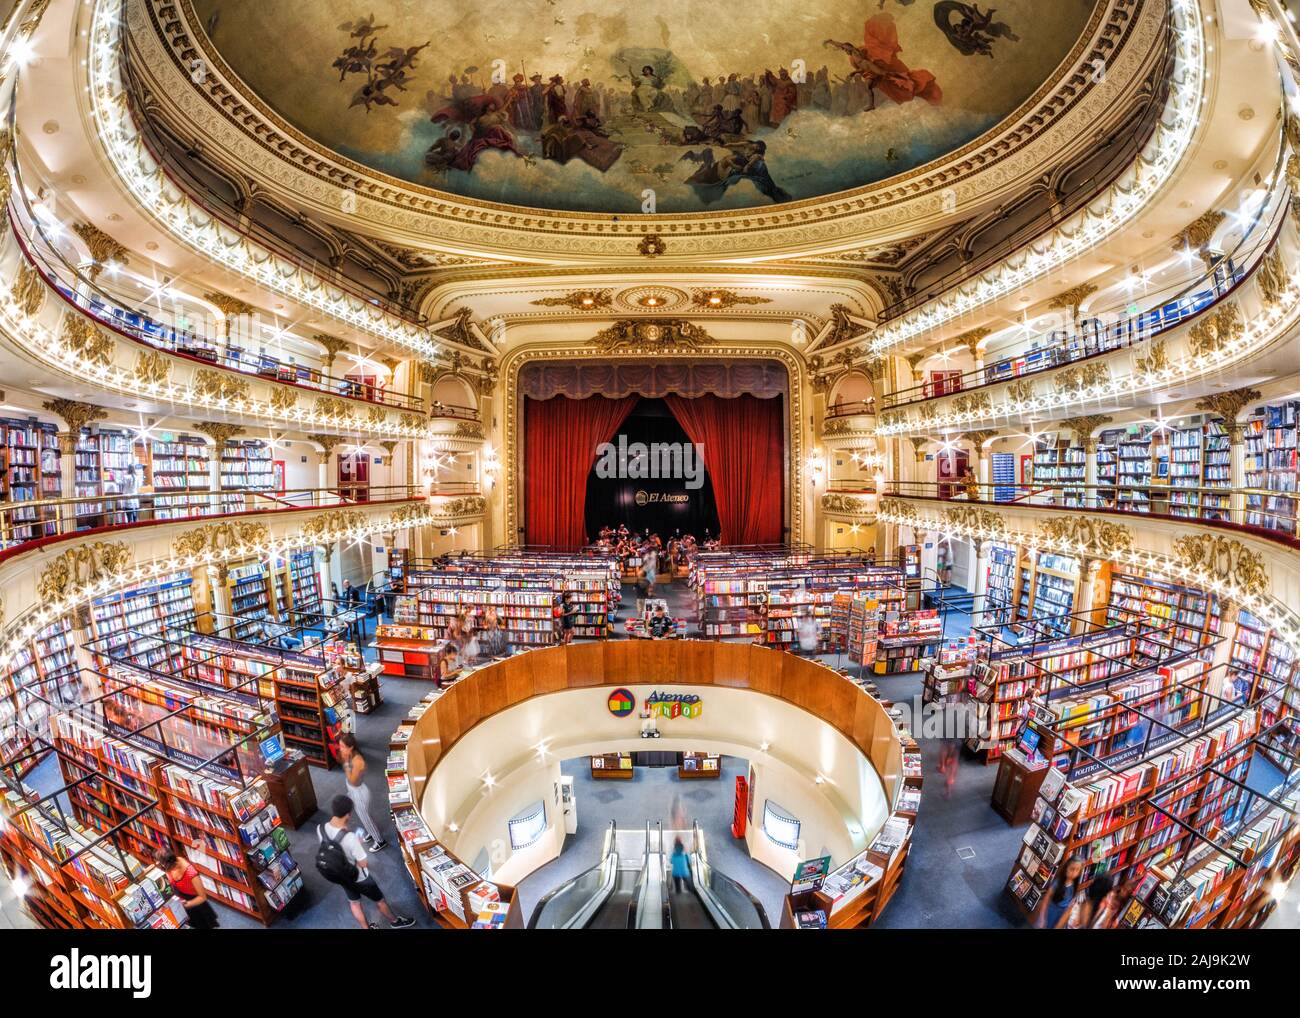 Architektonisches Wahrzeichen El Ateneo Grand Splendid, einem 100 Jahre alten Theater in einer Buchhandlung in Buenos Aires, Argentinien umgewandelt. Stockfoto